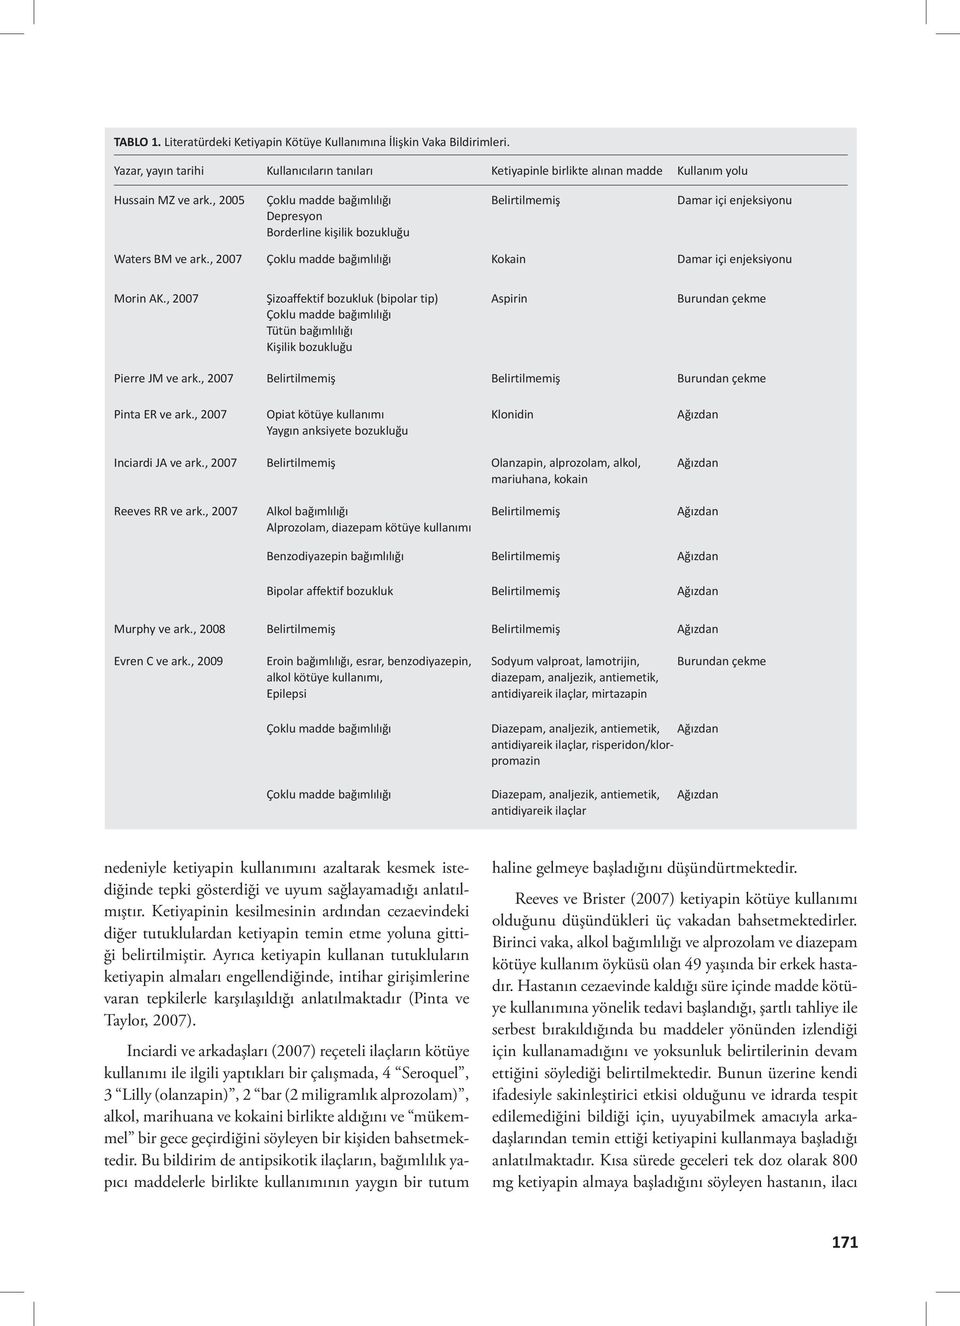 , 2007 Şizoaffektif bozukluk (bipolar tip) Çoklu madde bağımlılığı Tütün bağımlılığı Kişilik bozukluğu Aspirin Burundan çekme Pierre JM ve ark.